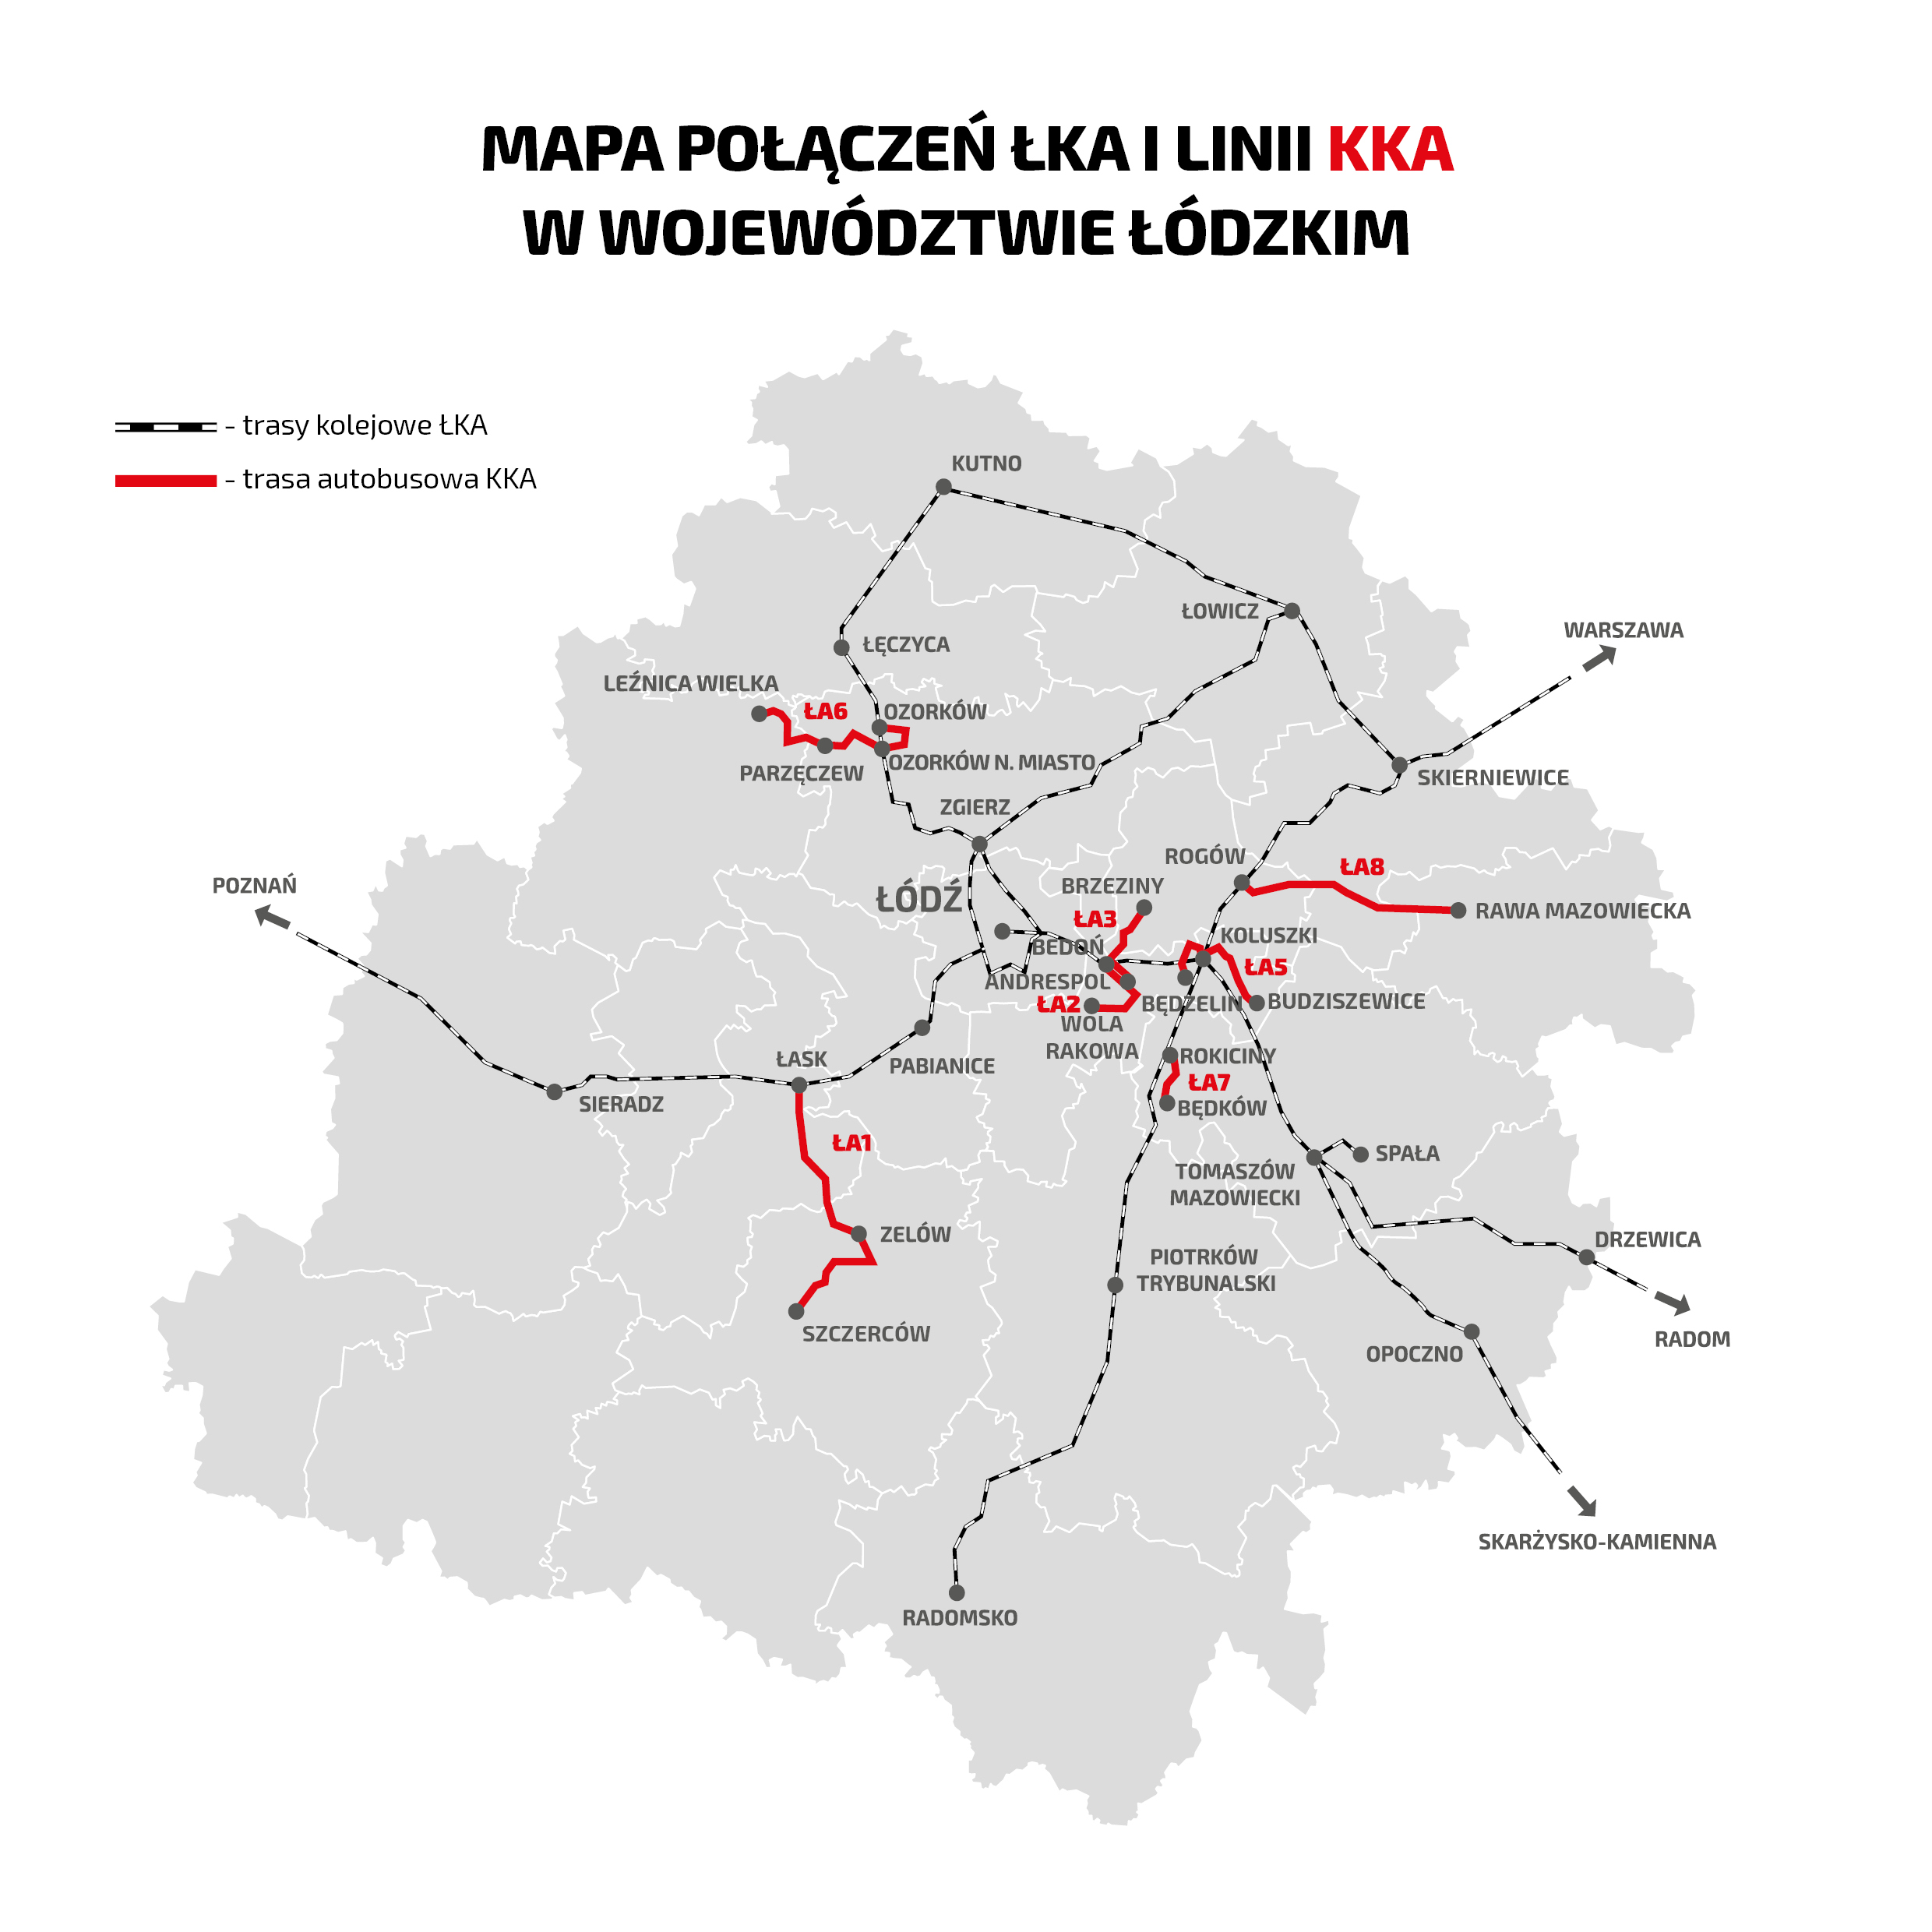 Mapa przedstawia schemat połączeń kolejowych na tle woj. łódzkiego oraz trasy autobusowe opisane poniżej. 